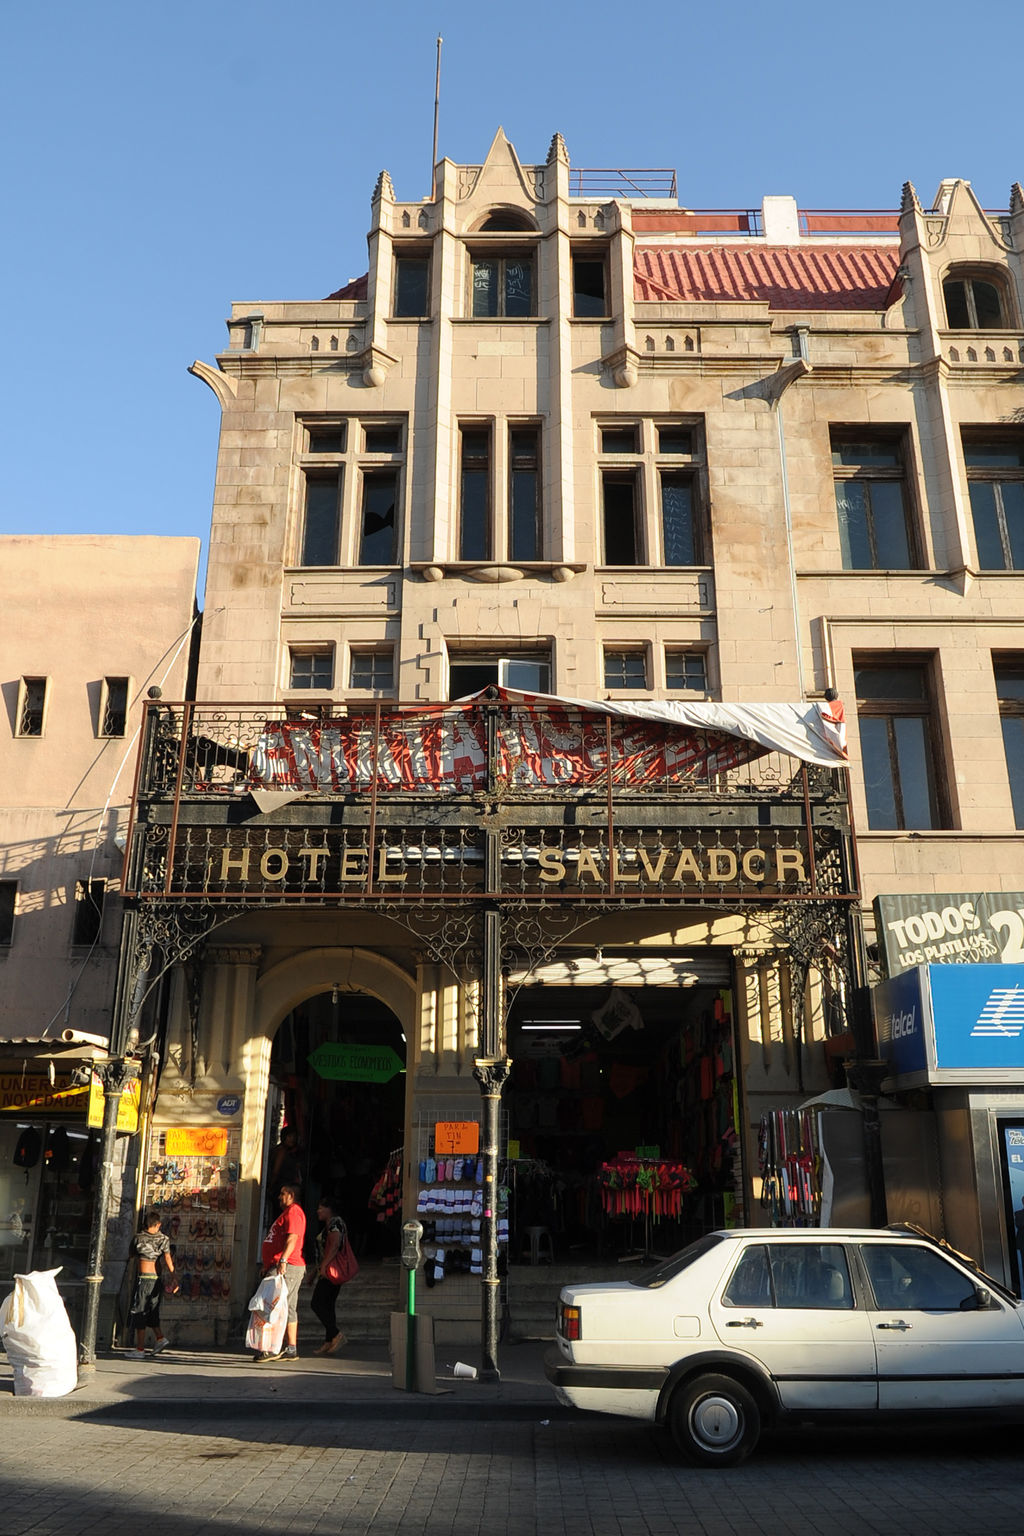 Lugar histórico. La planta baja del Hotel Salvador tenía un restaurante lujoso, ahora alberga dos locales comerciales. (Ramón Sotomayor)